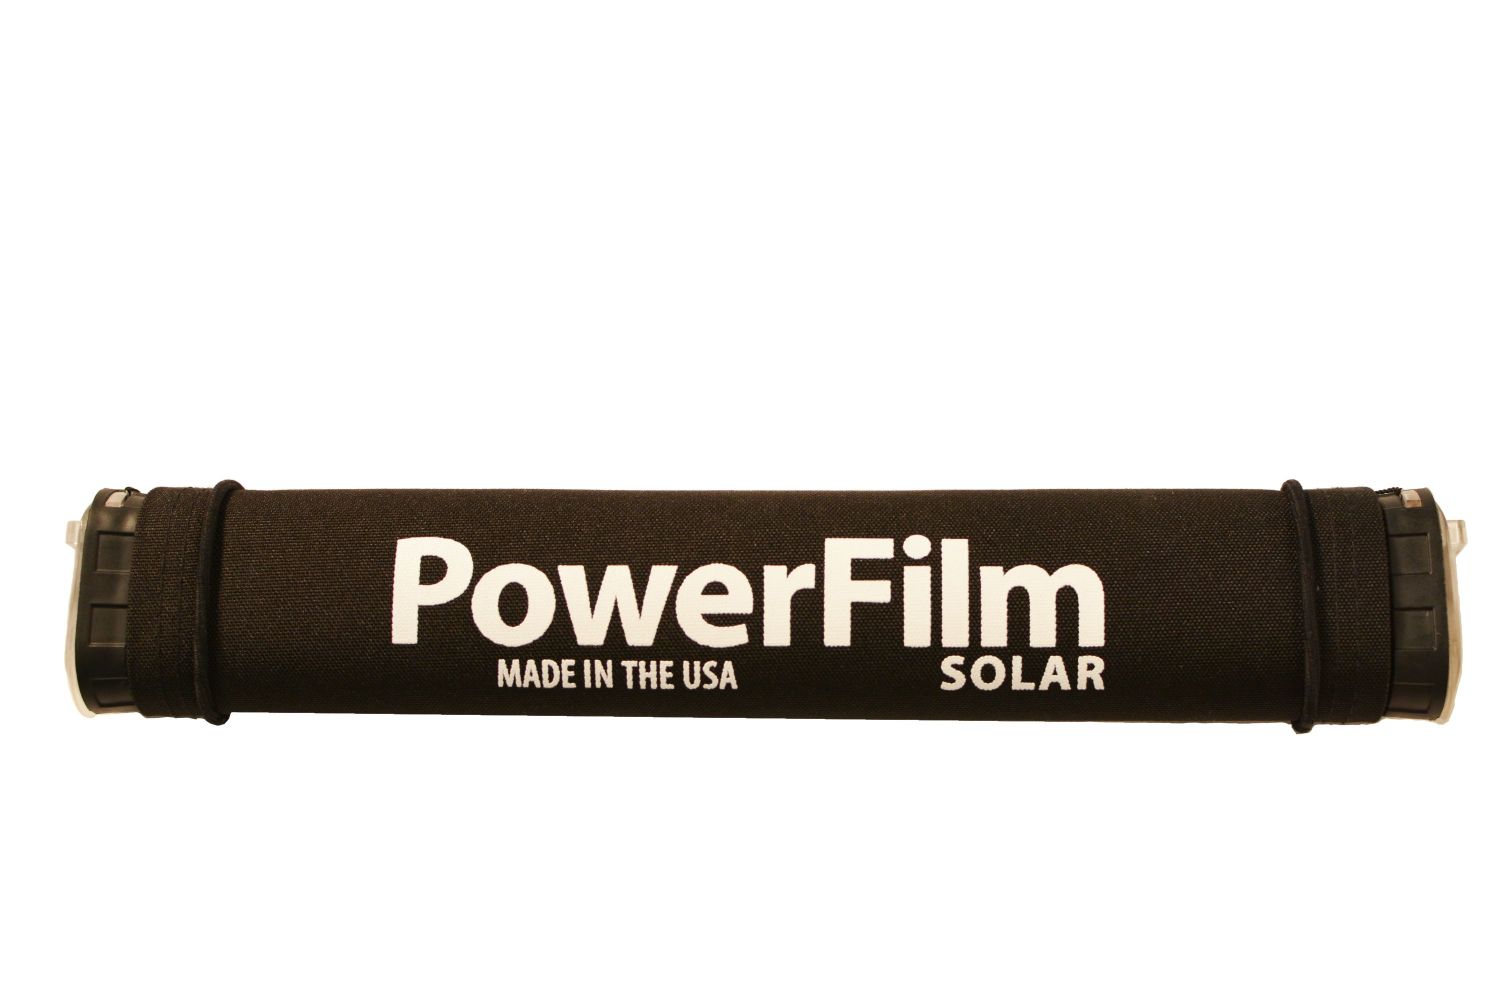 www.powerfilmsolar.com